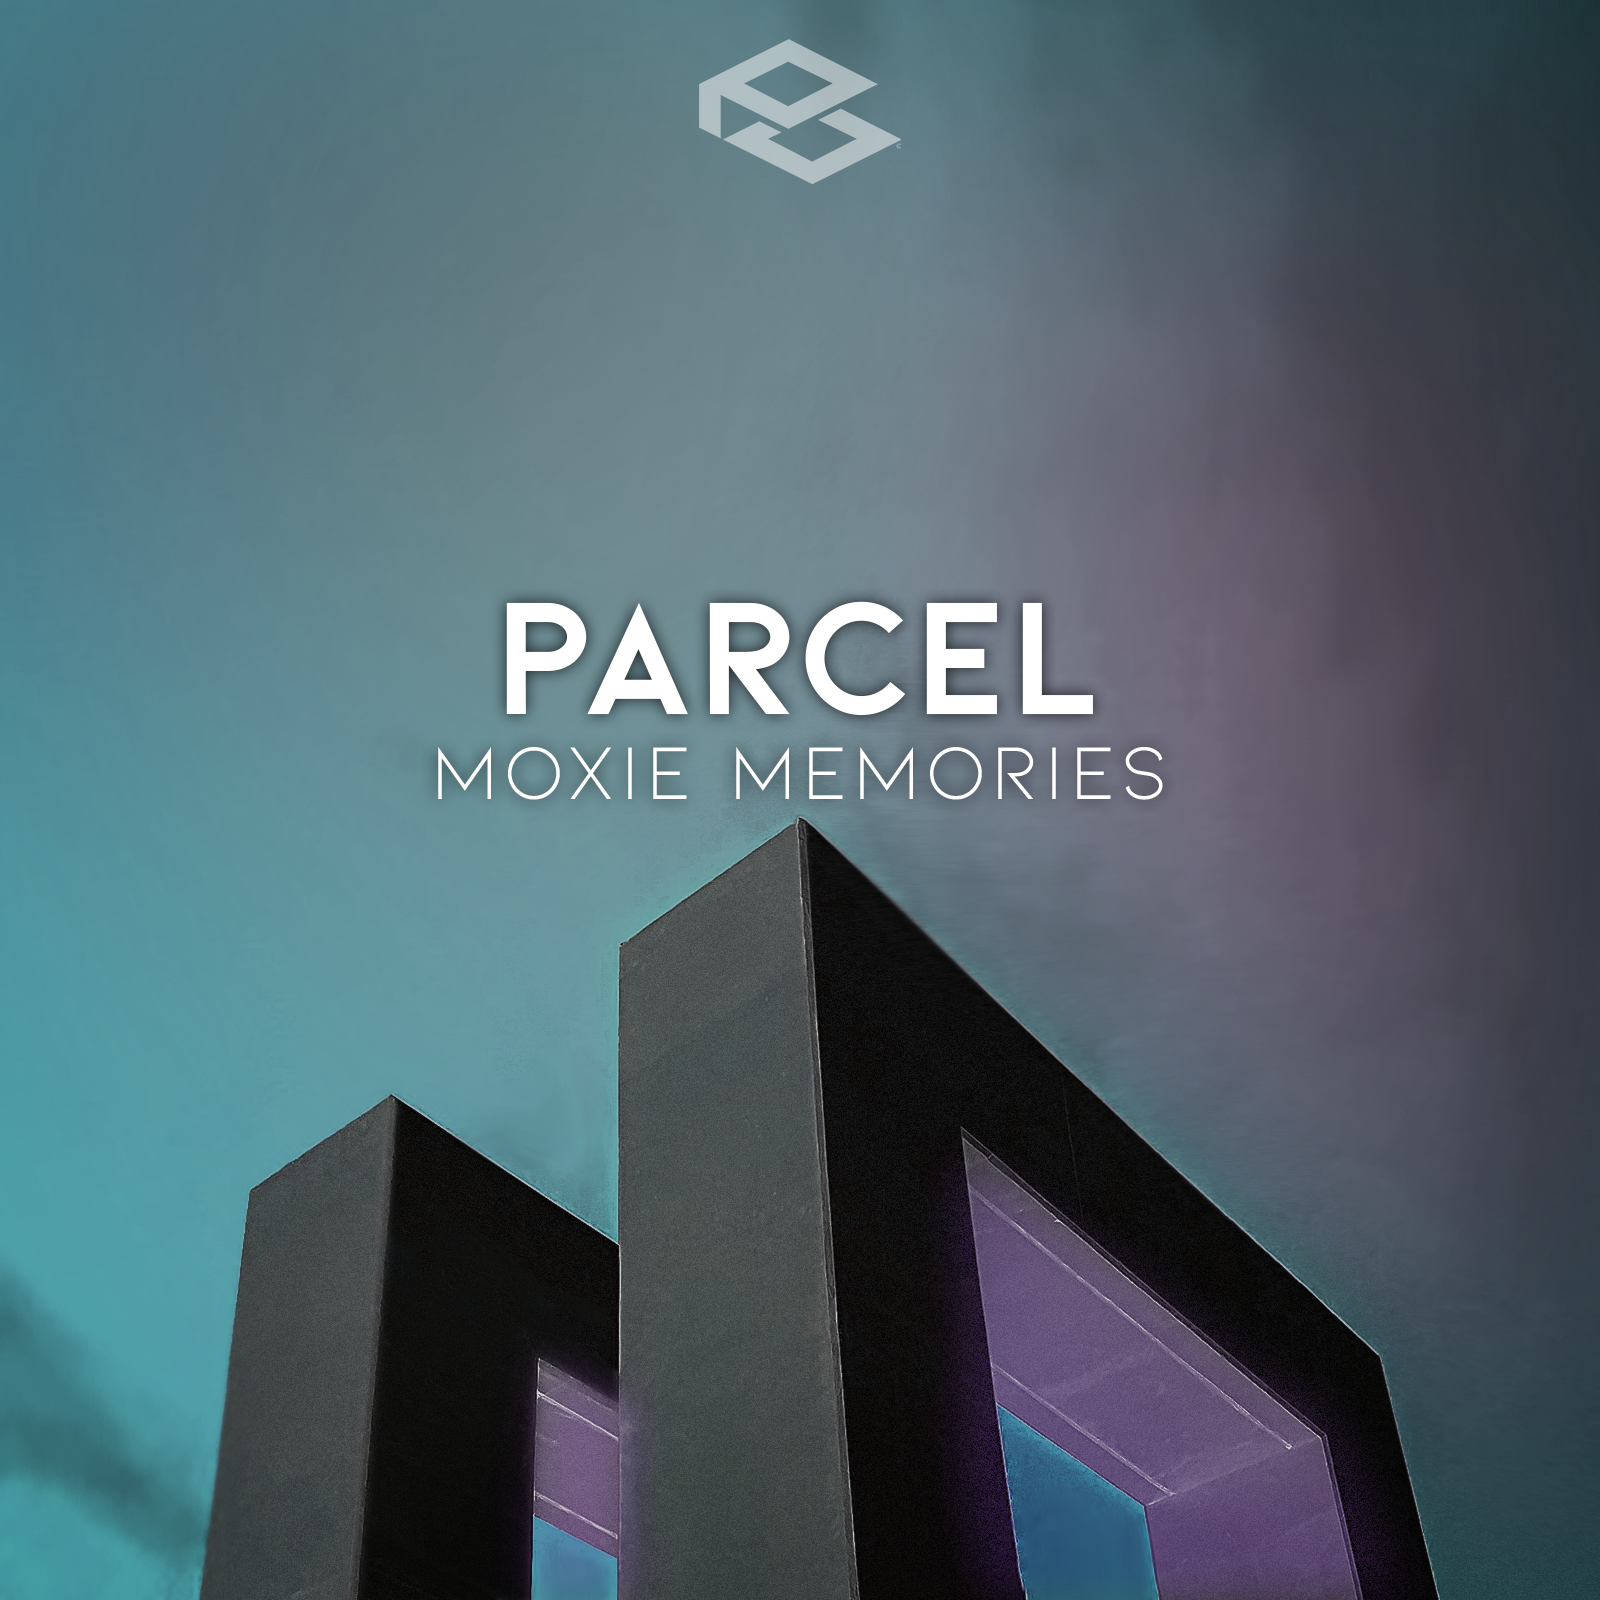 Parcel publica «Moxie Memories»